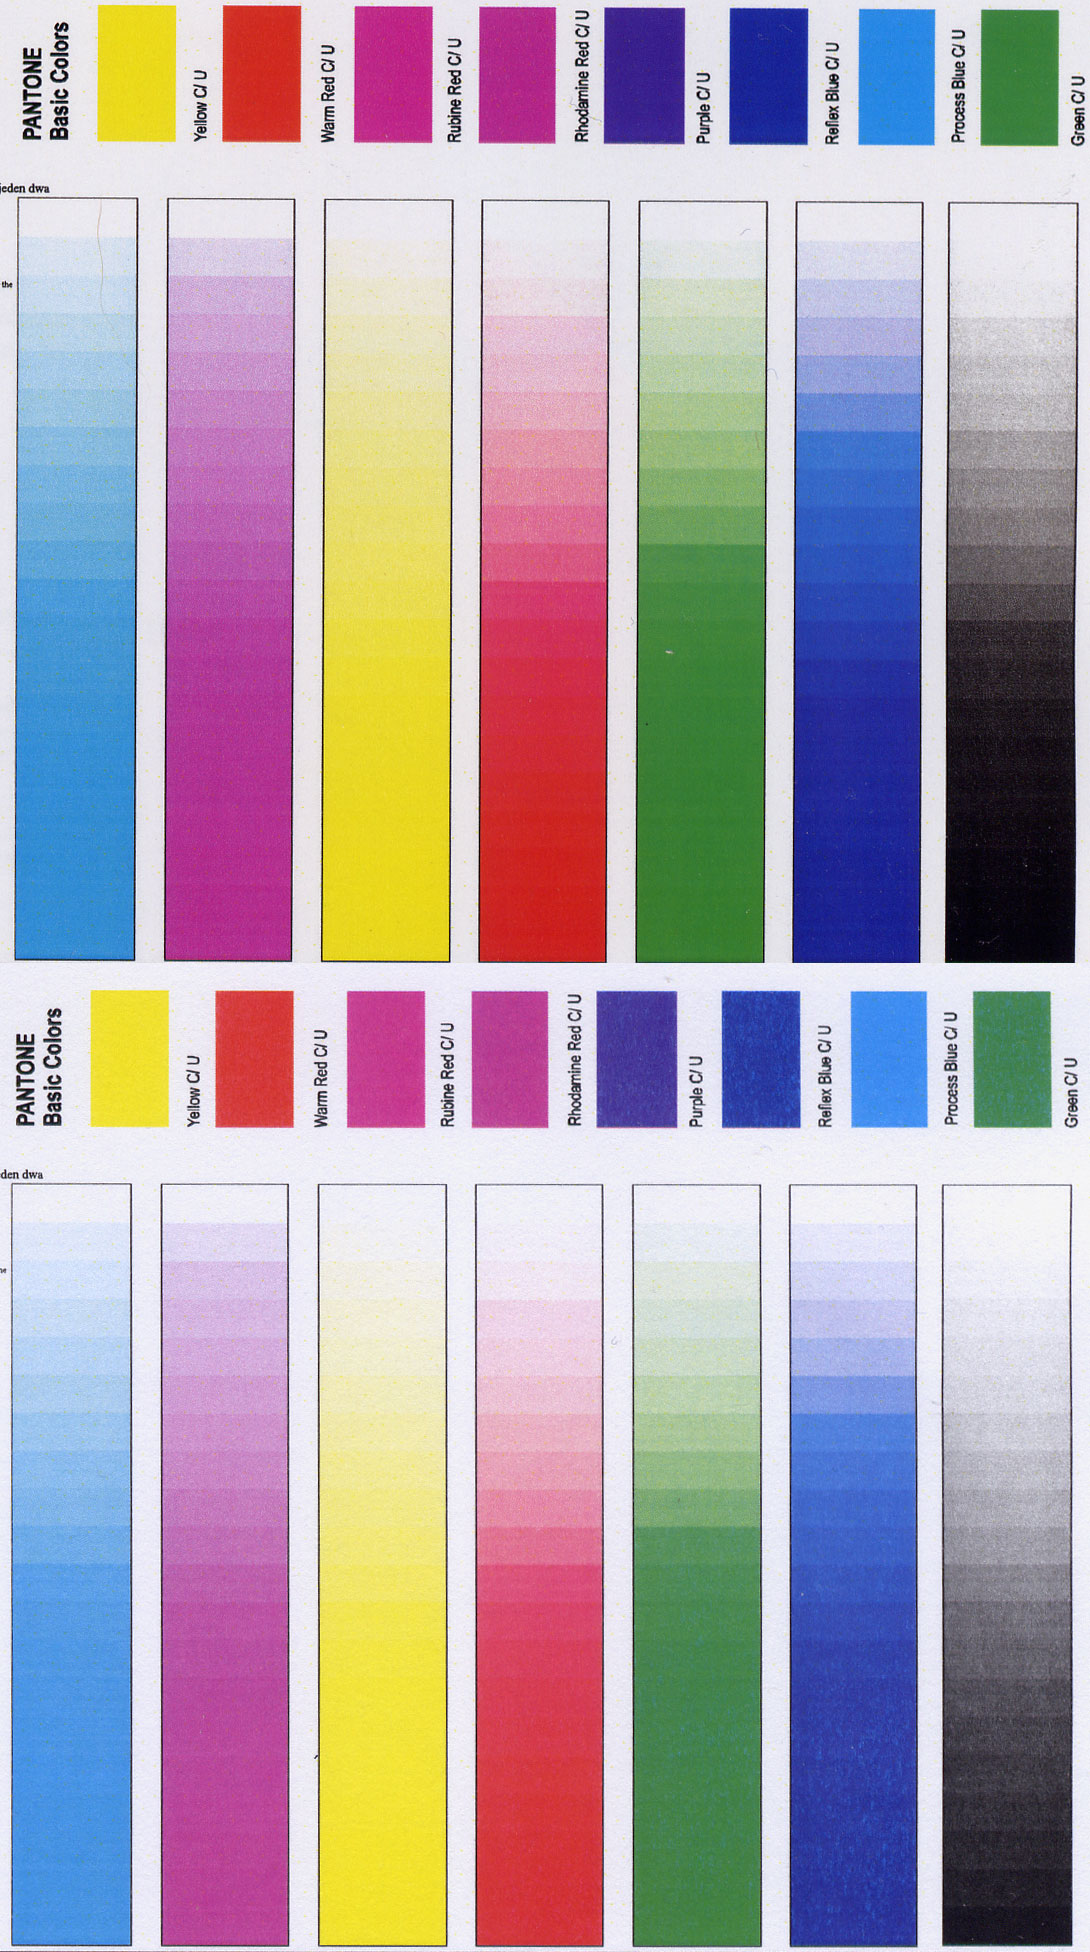 Печать цветных страниц. Эпсон тест дюз 6 цветов. Тест принтера 6 цветов Epson l805. Палитра цветов Эпсон л800. Тест печати струйного принтера Epson l800.